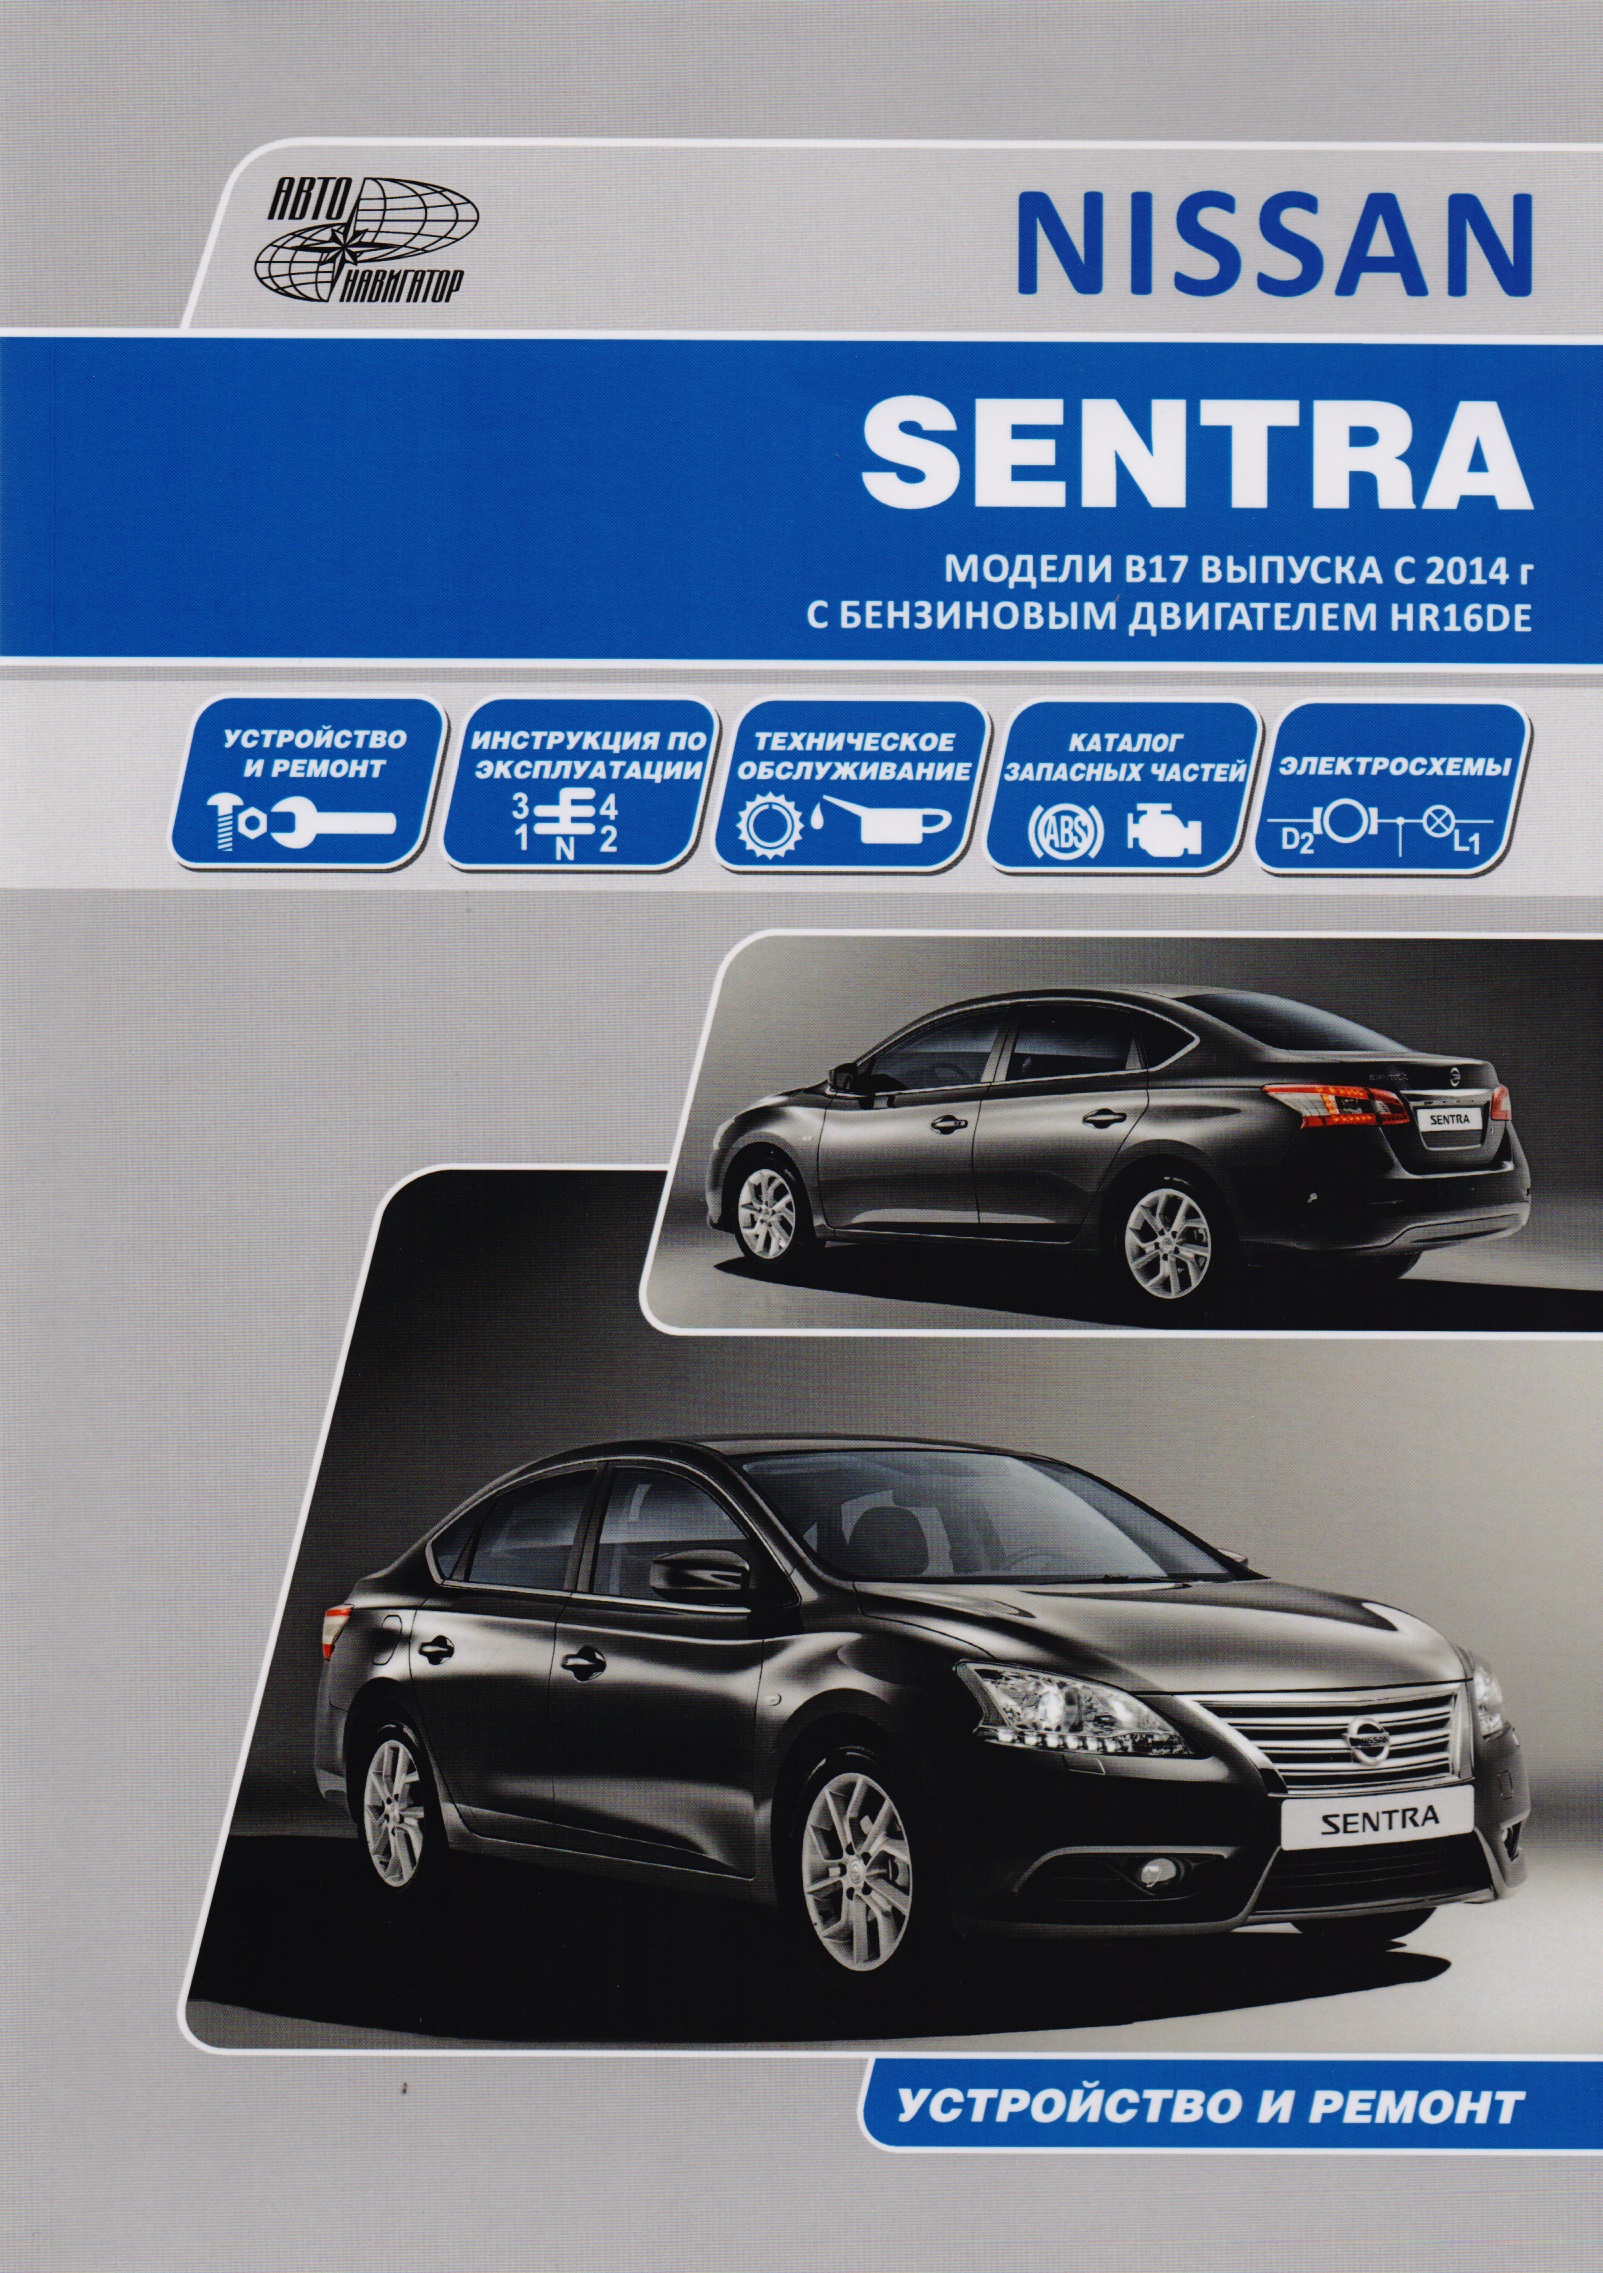 Nissan Sentra. Модели B17 выпуска с 2014 года с бензиновым двигателем HR16DE. Руководство по эксплуатации, устройство, техническое обслуживание, ремонт, каталог расходных запасных частей